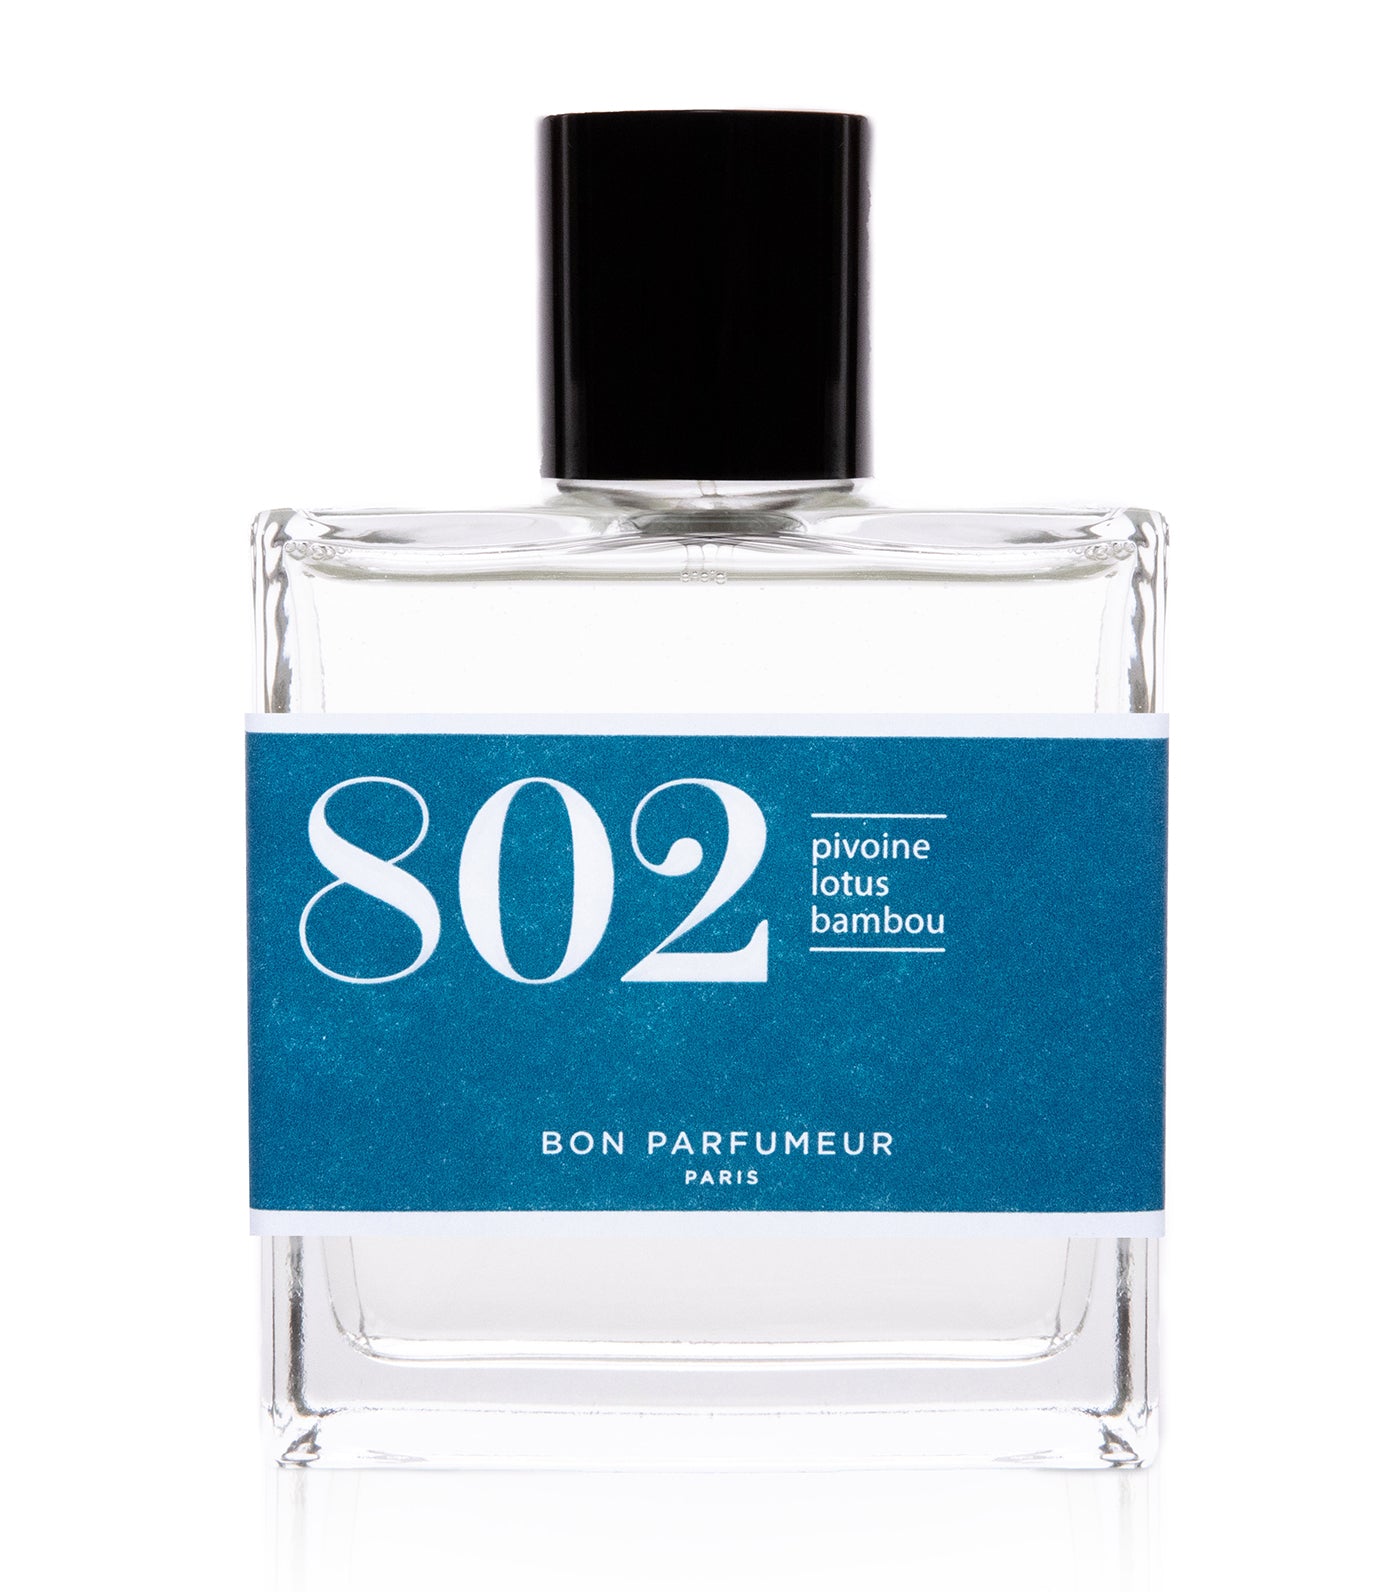 Eau de parfum 802 : peony, lotus and bamboo